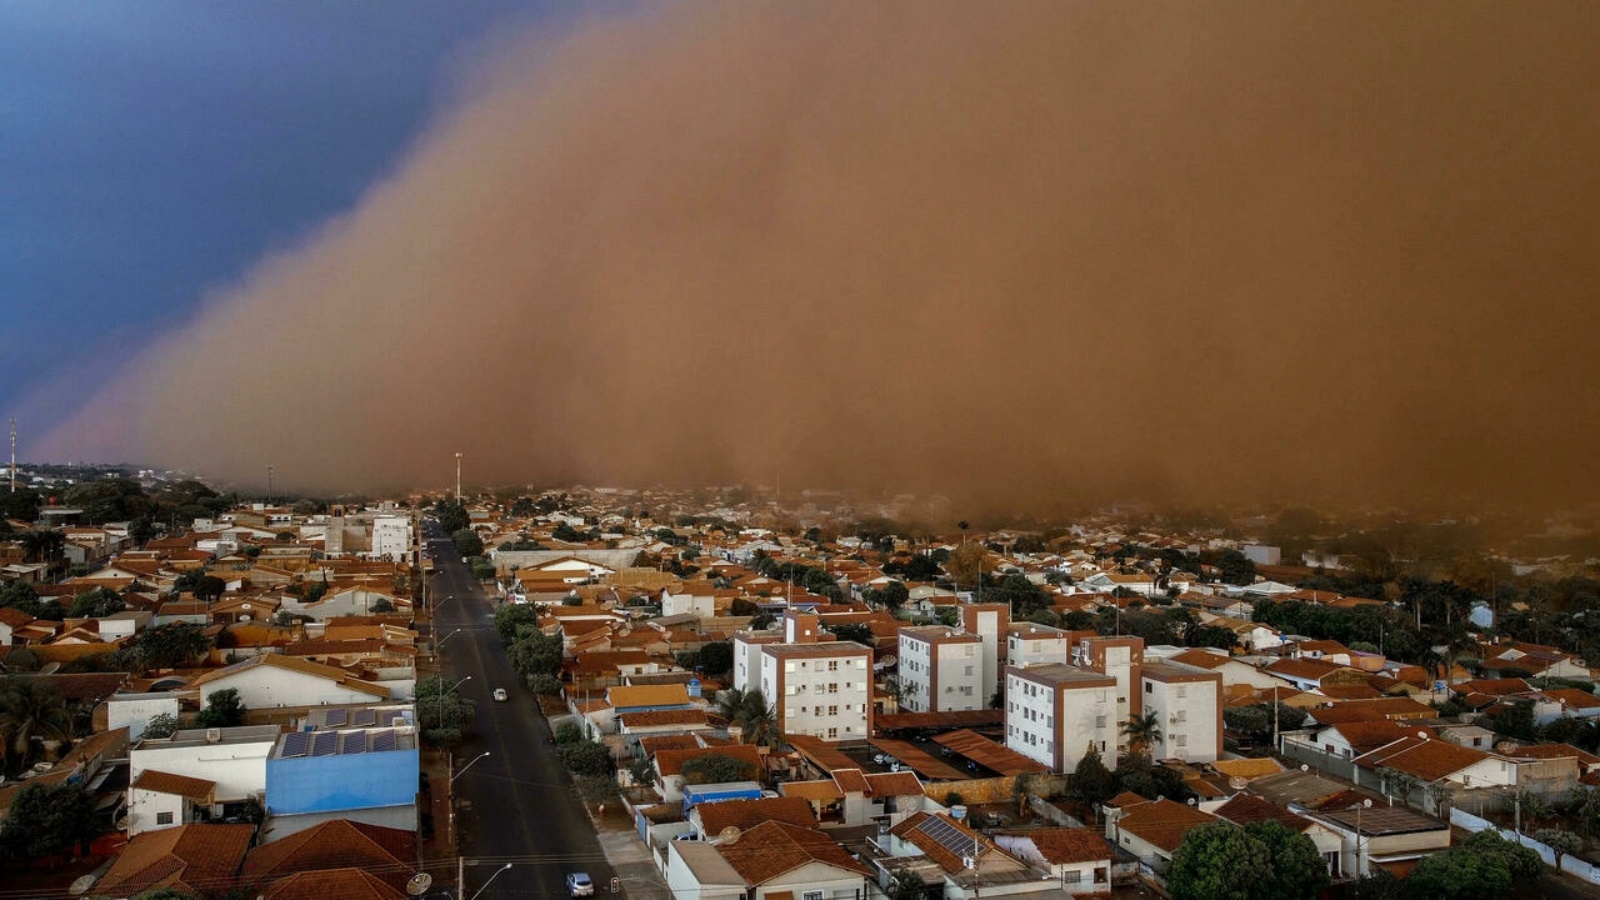 عاصفة رملية ضخمة تجتاح حي نوسا سينهورا دو كارمو في مدينة فروتال، ولاية ميناس جيرايس، البرازيل. في 26 أيلول/سبتمبر 2021.